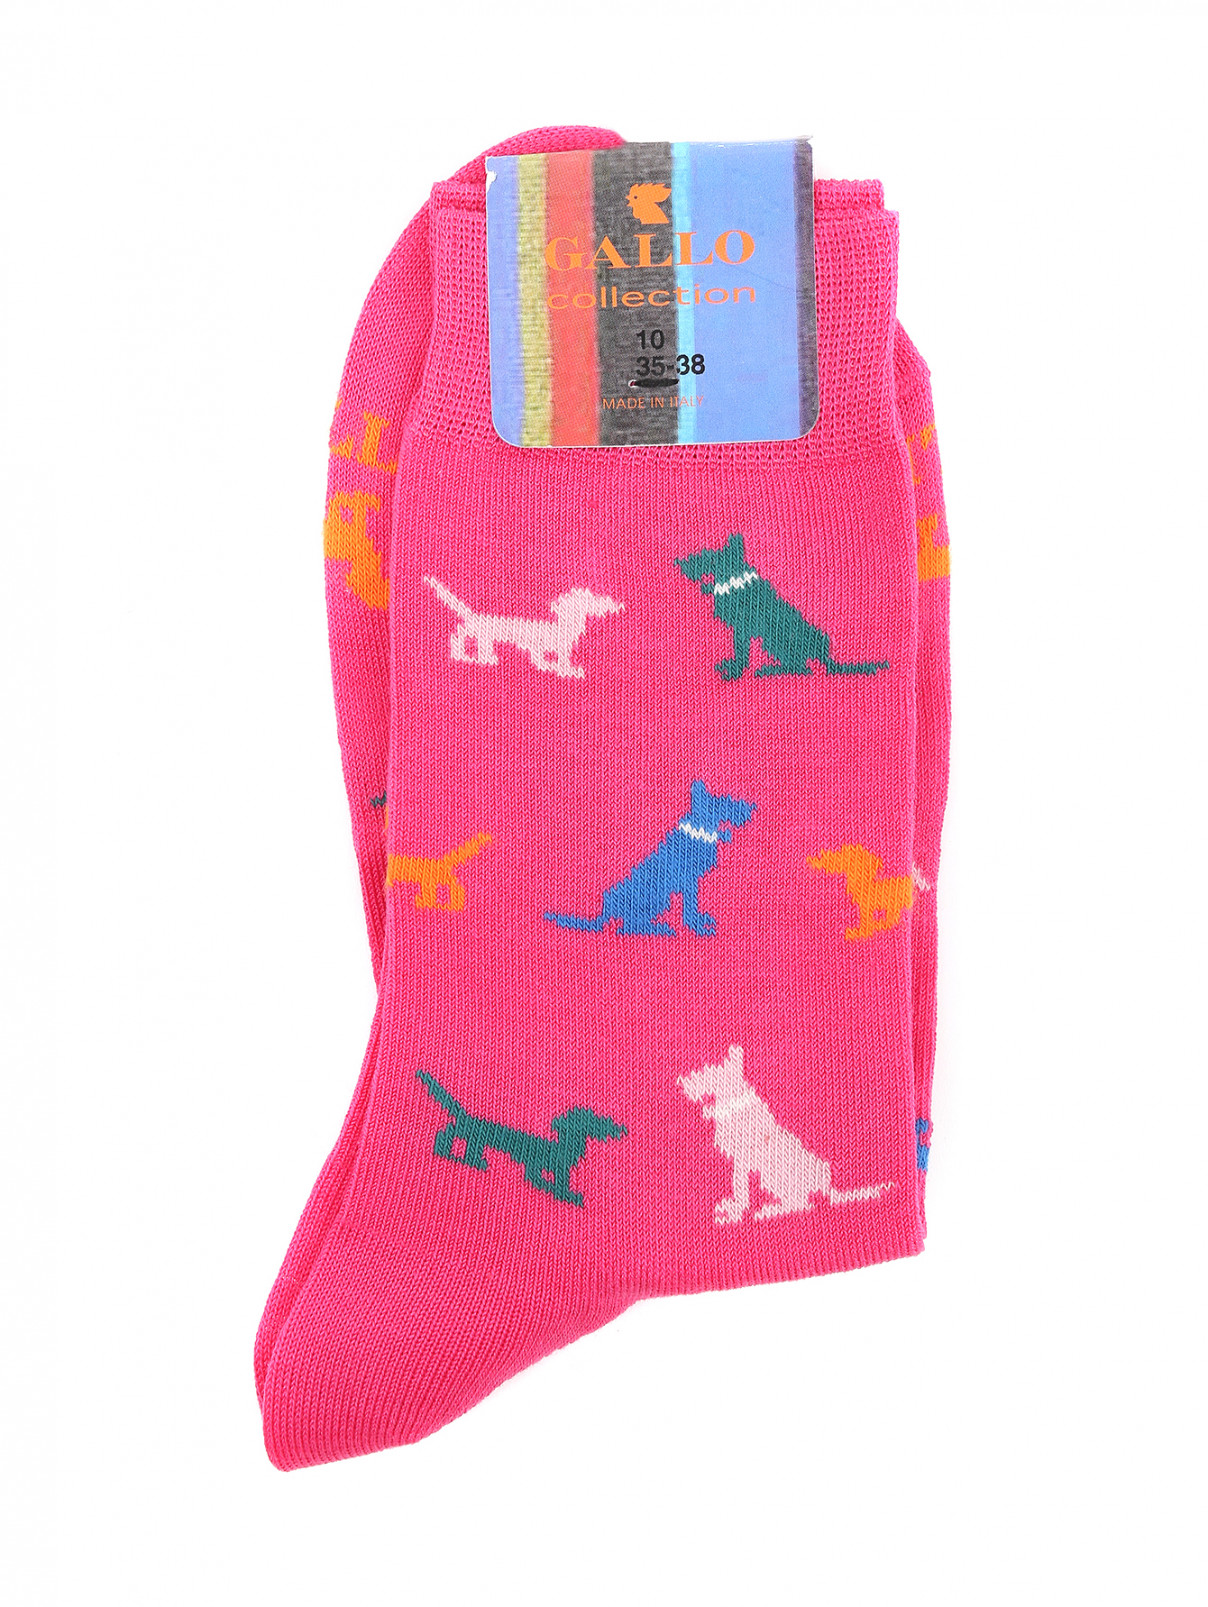 Носки из хлопка с узором Gallo  –  Общий вид  – Цвет:  Розовый